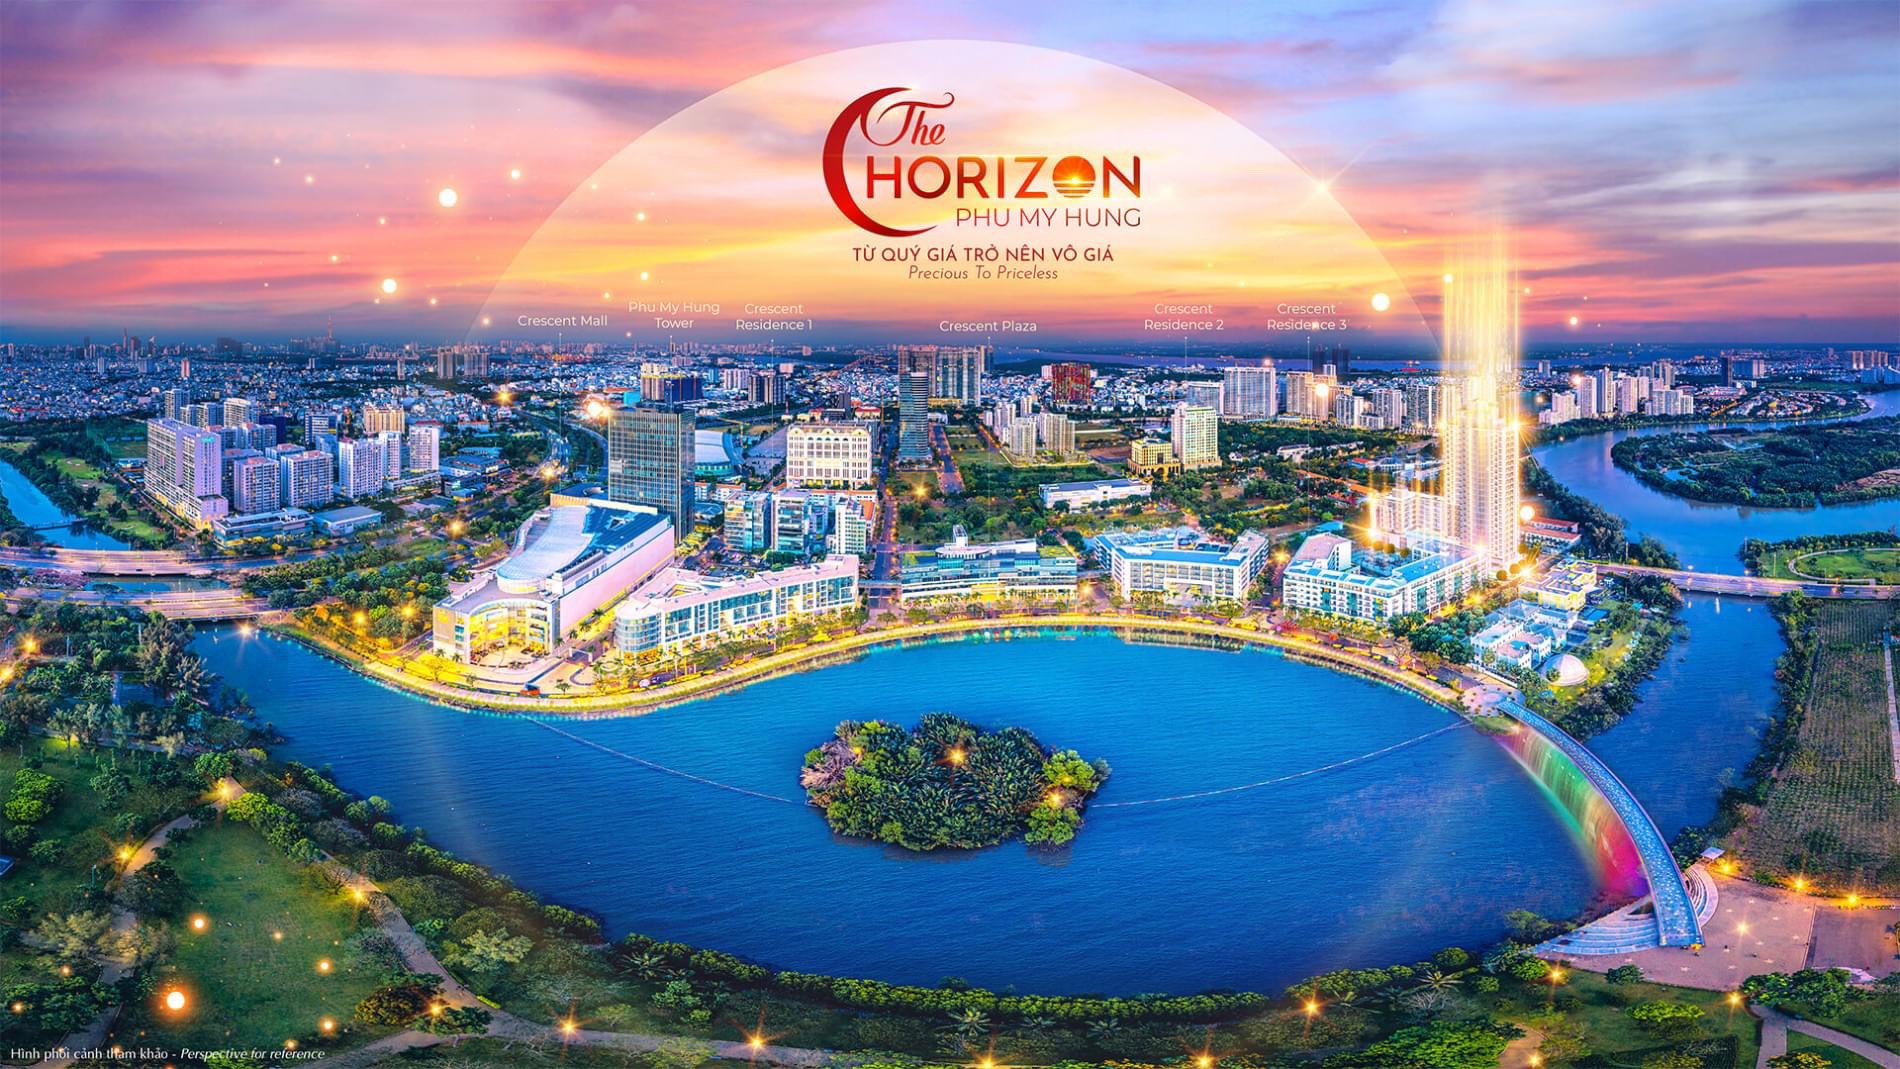 Xem nhà thực tế dự án The Horizon Hồ Bán Nguyệt Phú Mỹ Hưng Quận 7 - Ảnh 4